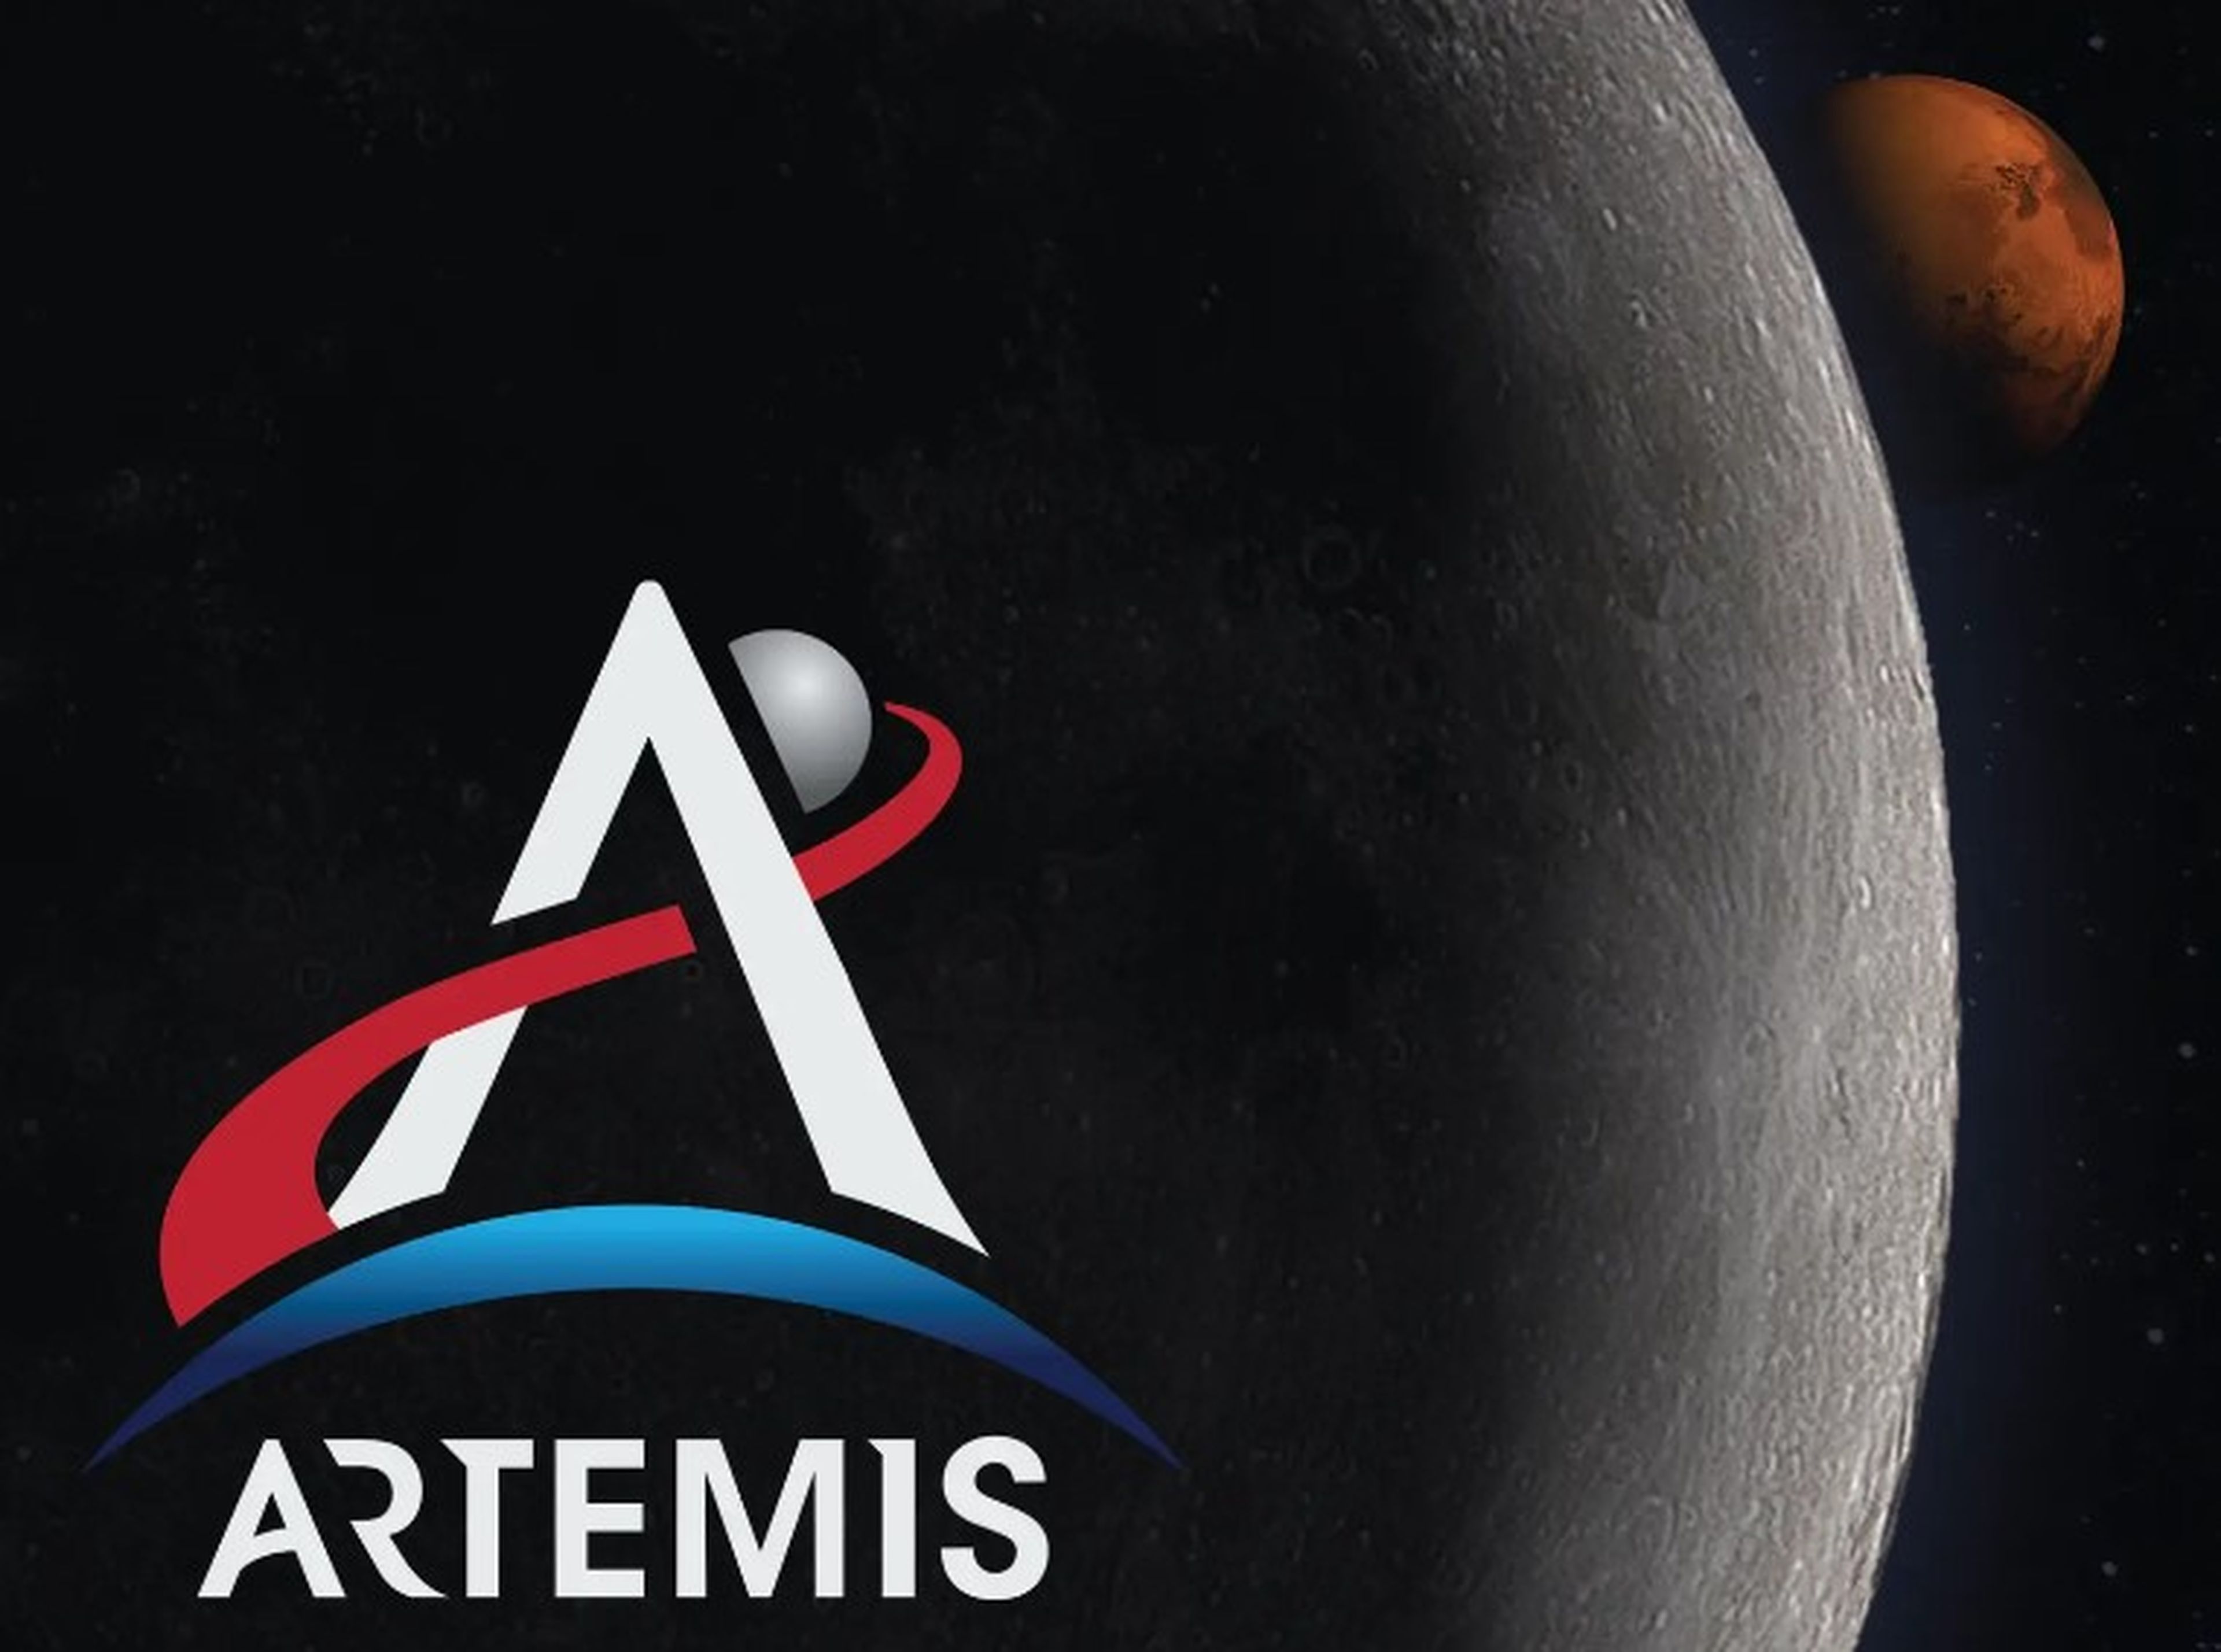 El programa Artemis de la NASA pretende llevar a una persona a la luna en 2024. Después tienen como objetivo enviar astronautas a Marte.